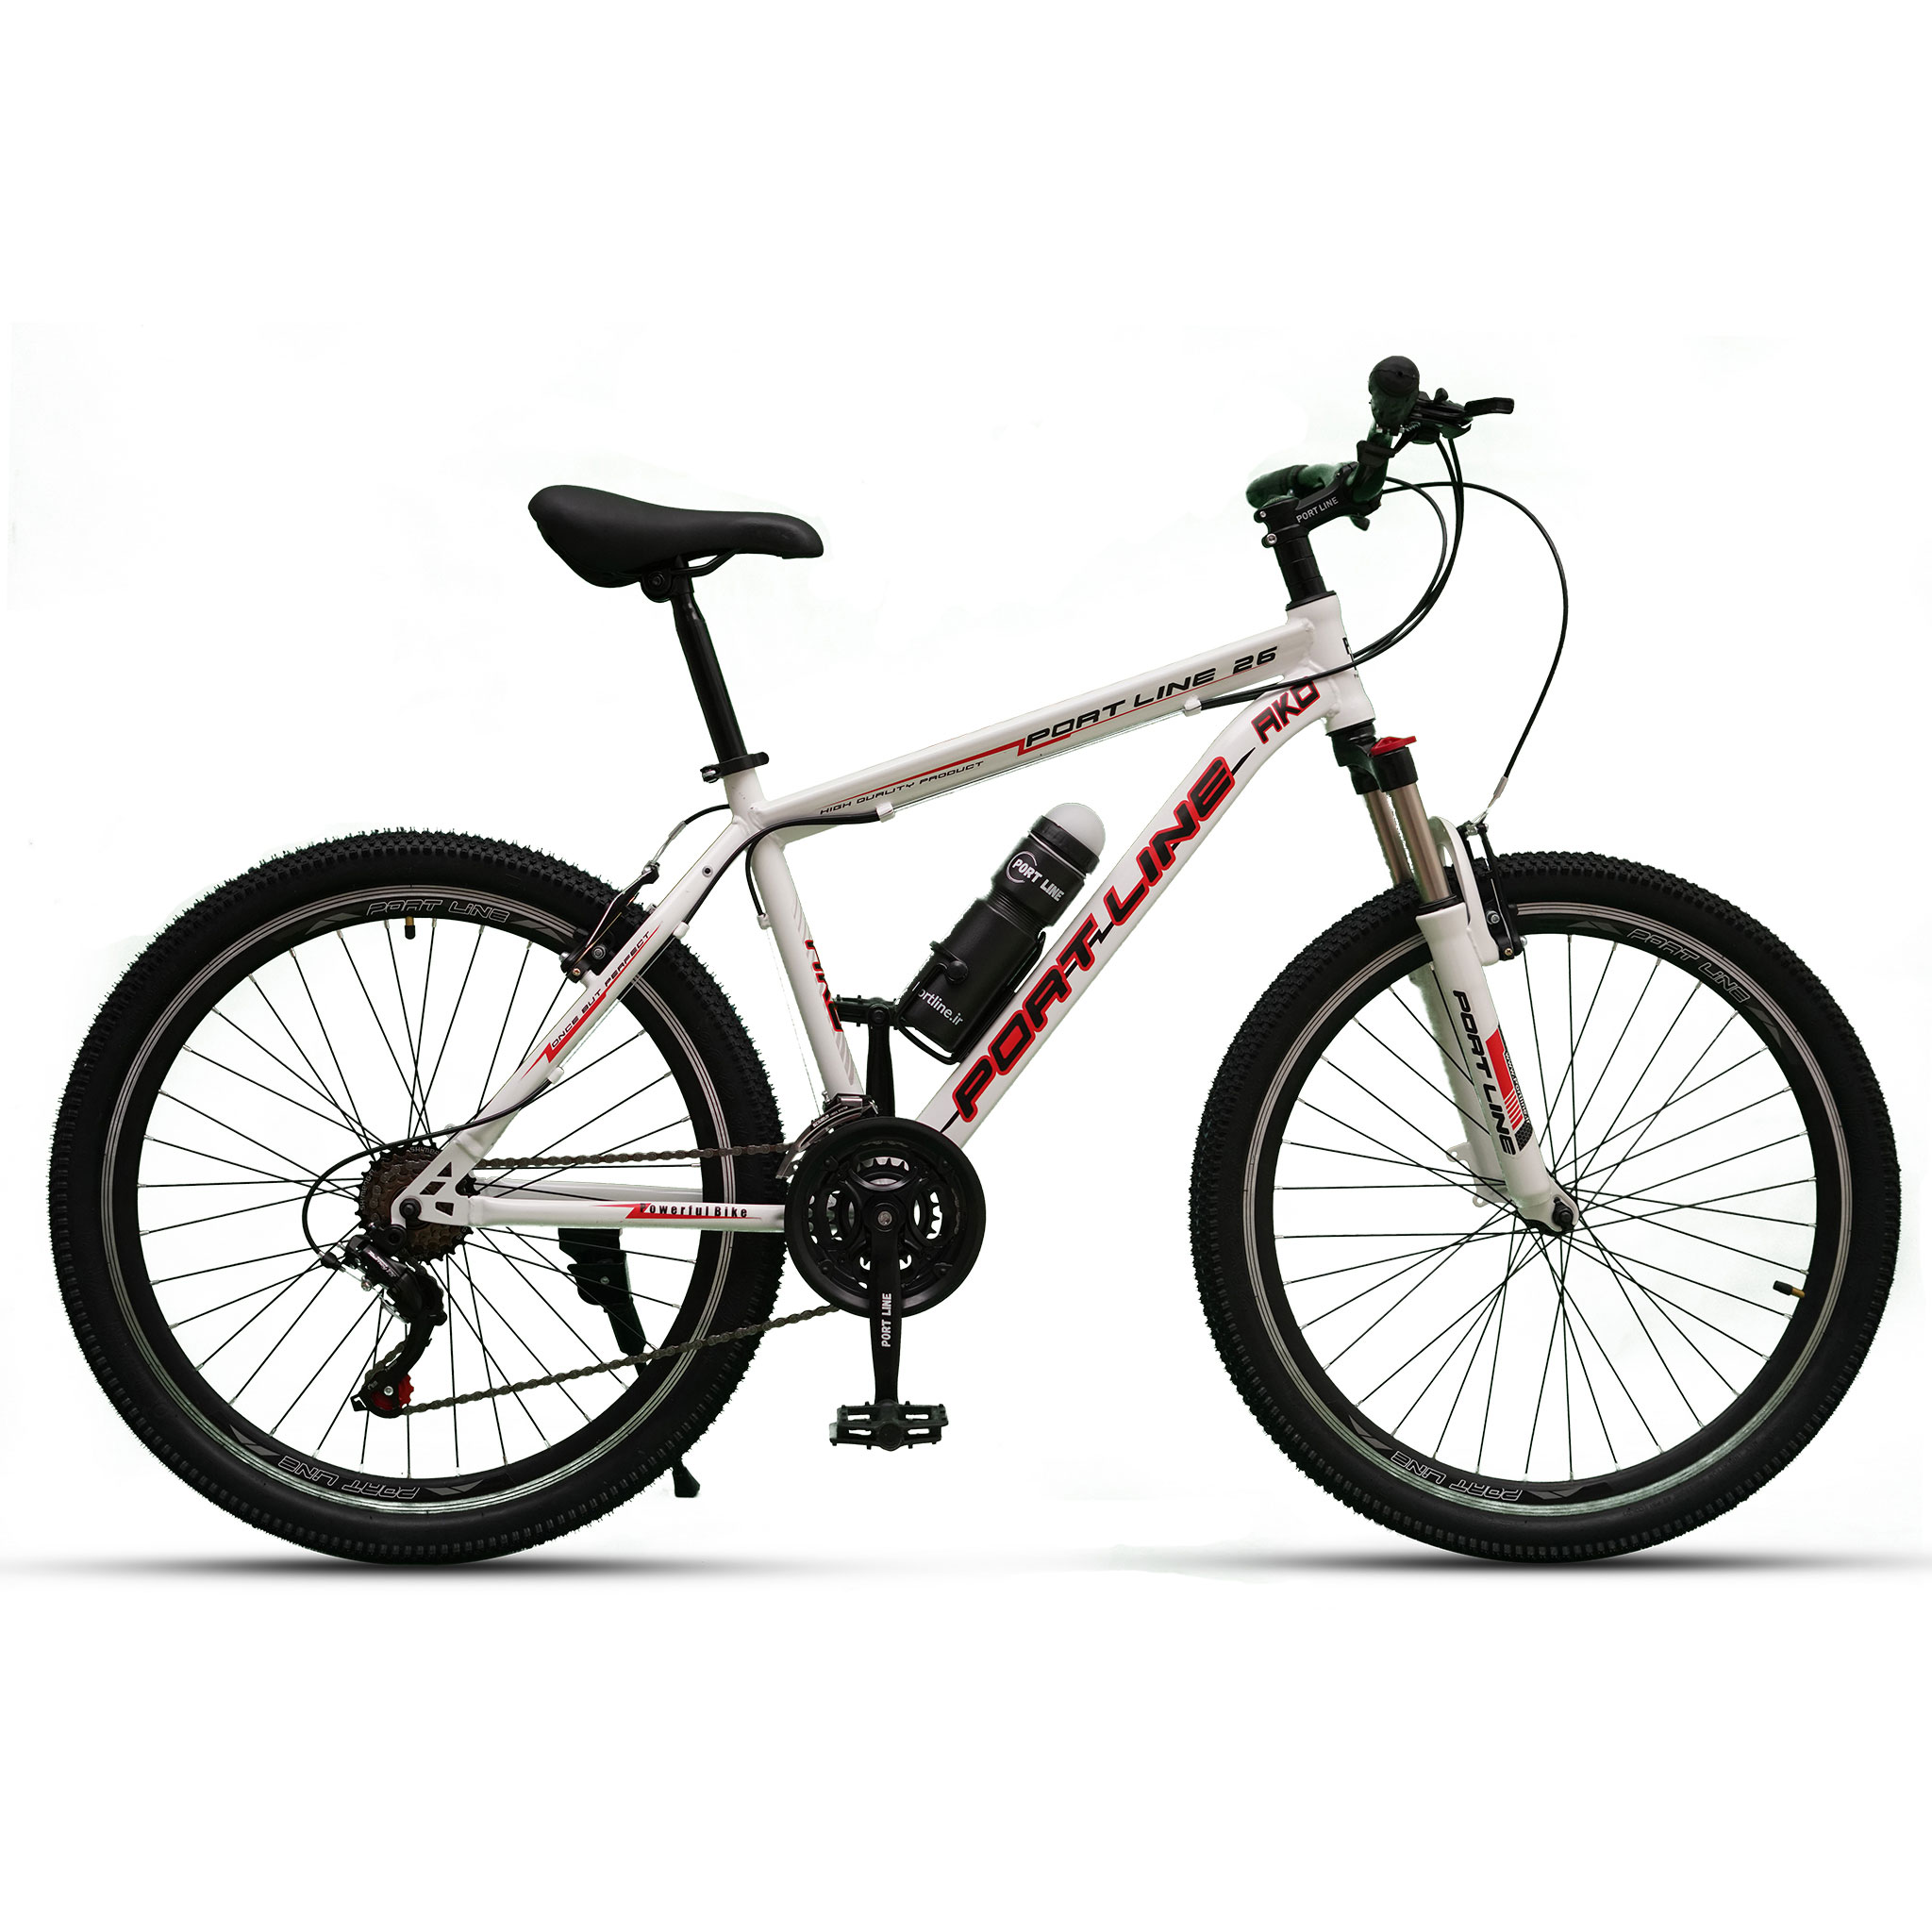 نکته خرید - قیمت روز دوچرخه کوهستان پورت لاین مدل آکو سایز 26 خرید